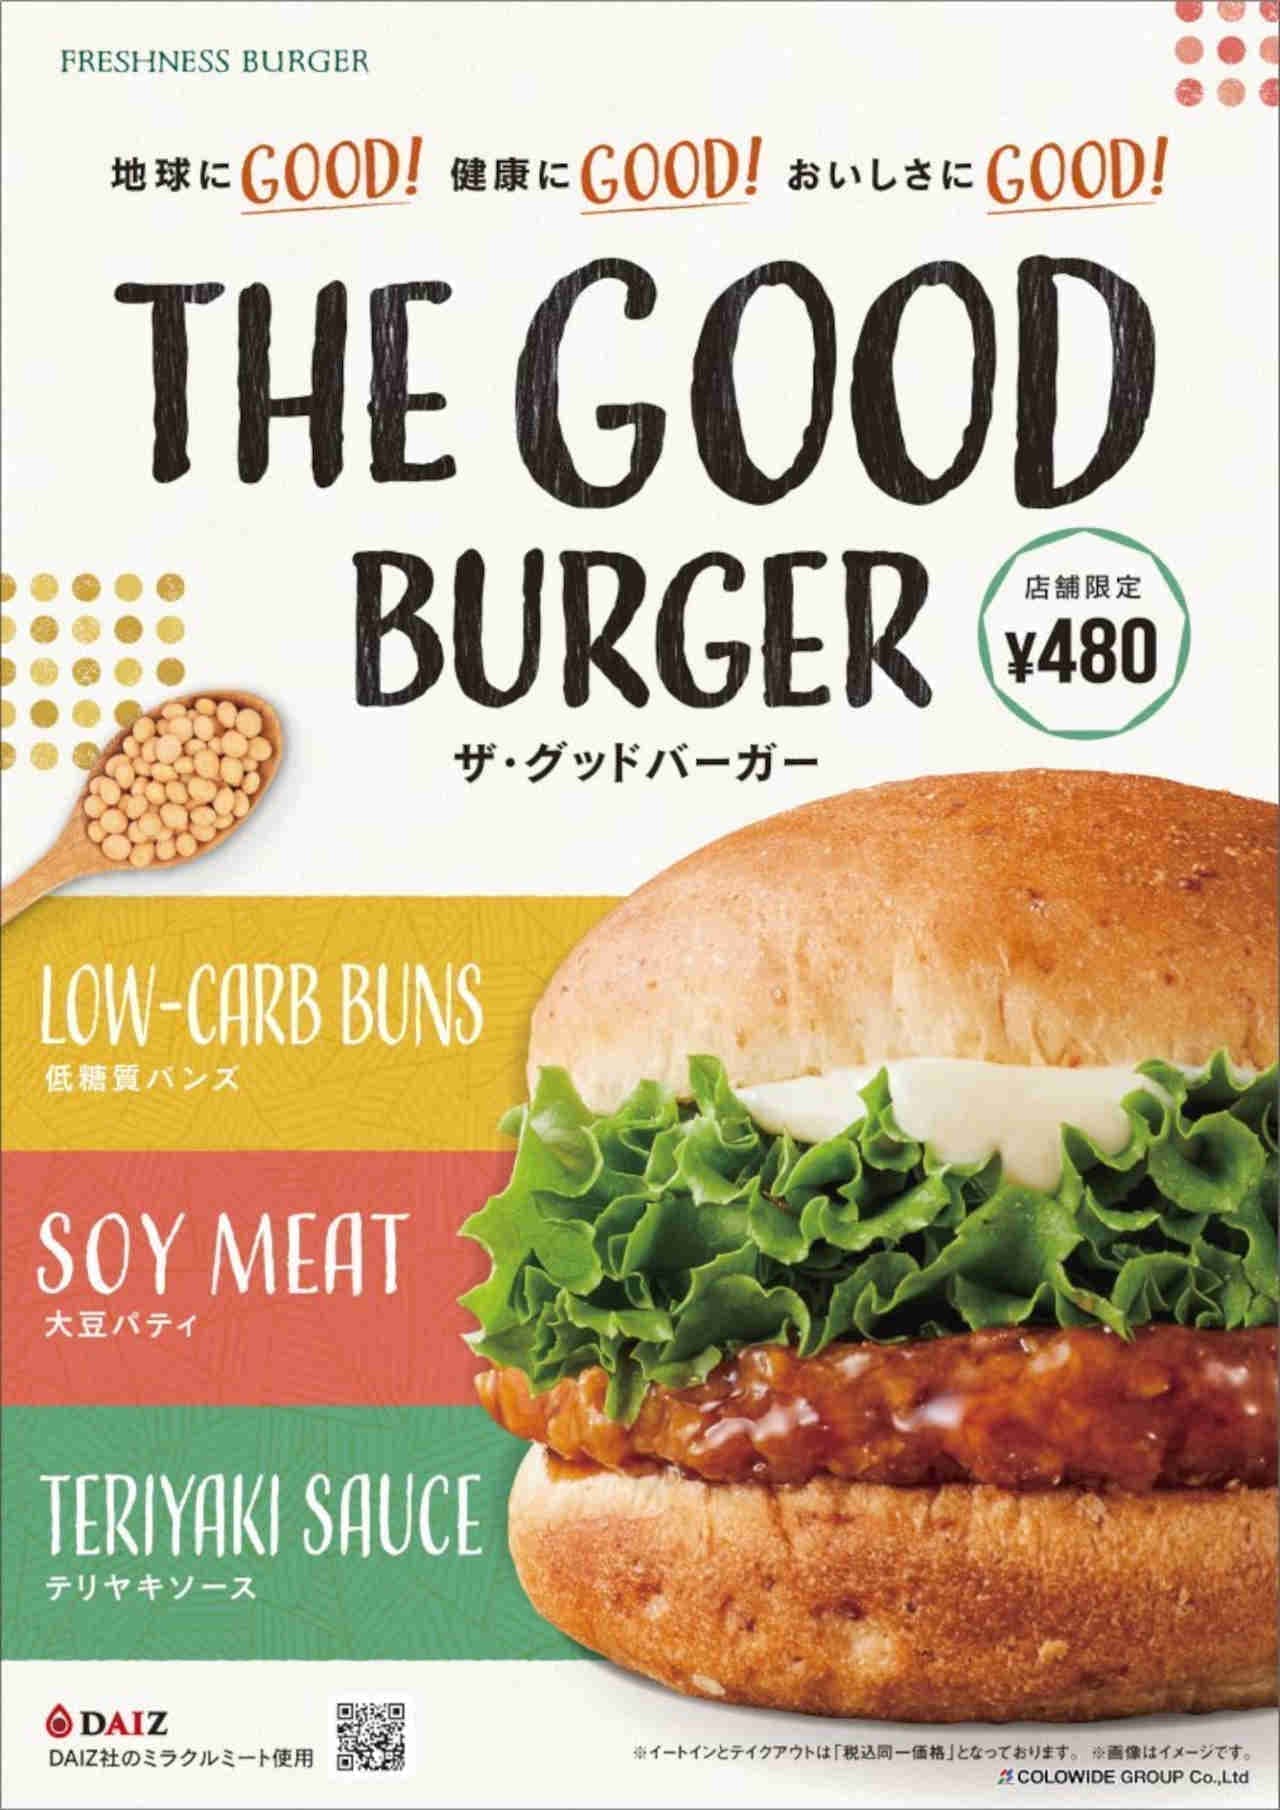 フレッシュネスバーガーに大豆パティのハンバーガー「THE GOOD BURGER」